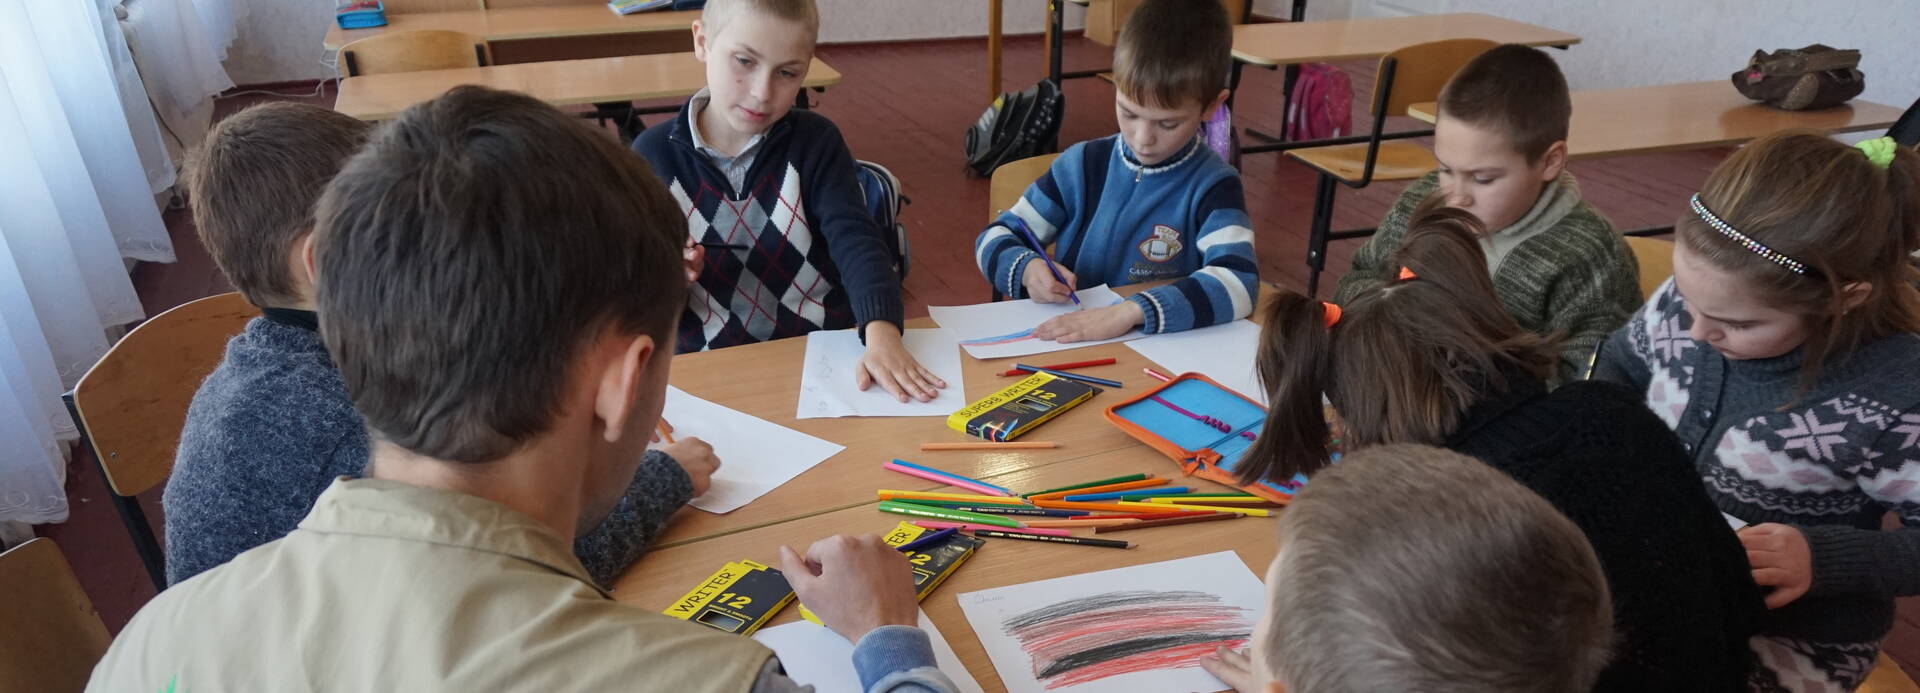 Mitarbeiter von Aktion gegen den Hunger mit Schulkindern in der Ukraine.